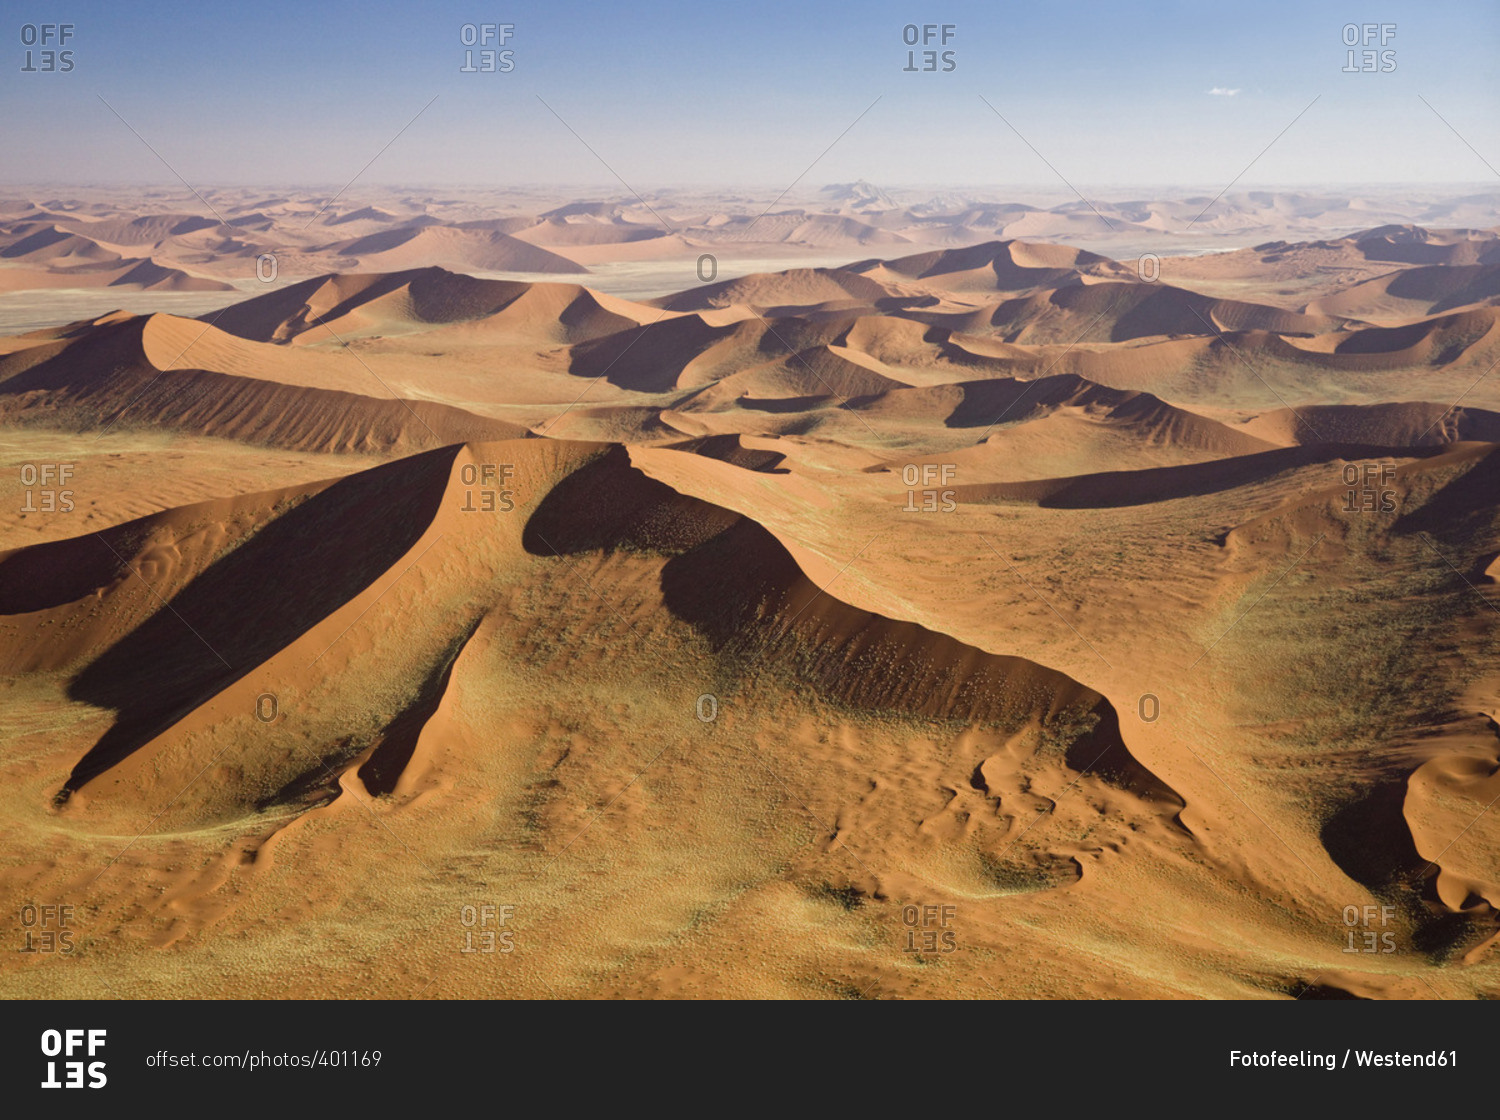 Africa- Namibia- Namib Desert- aerial view